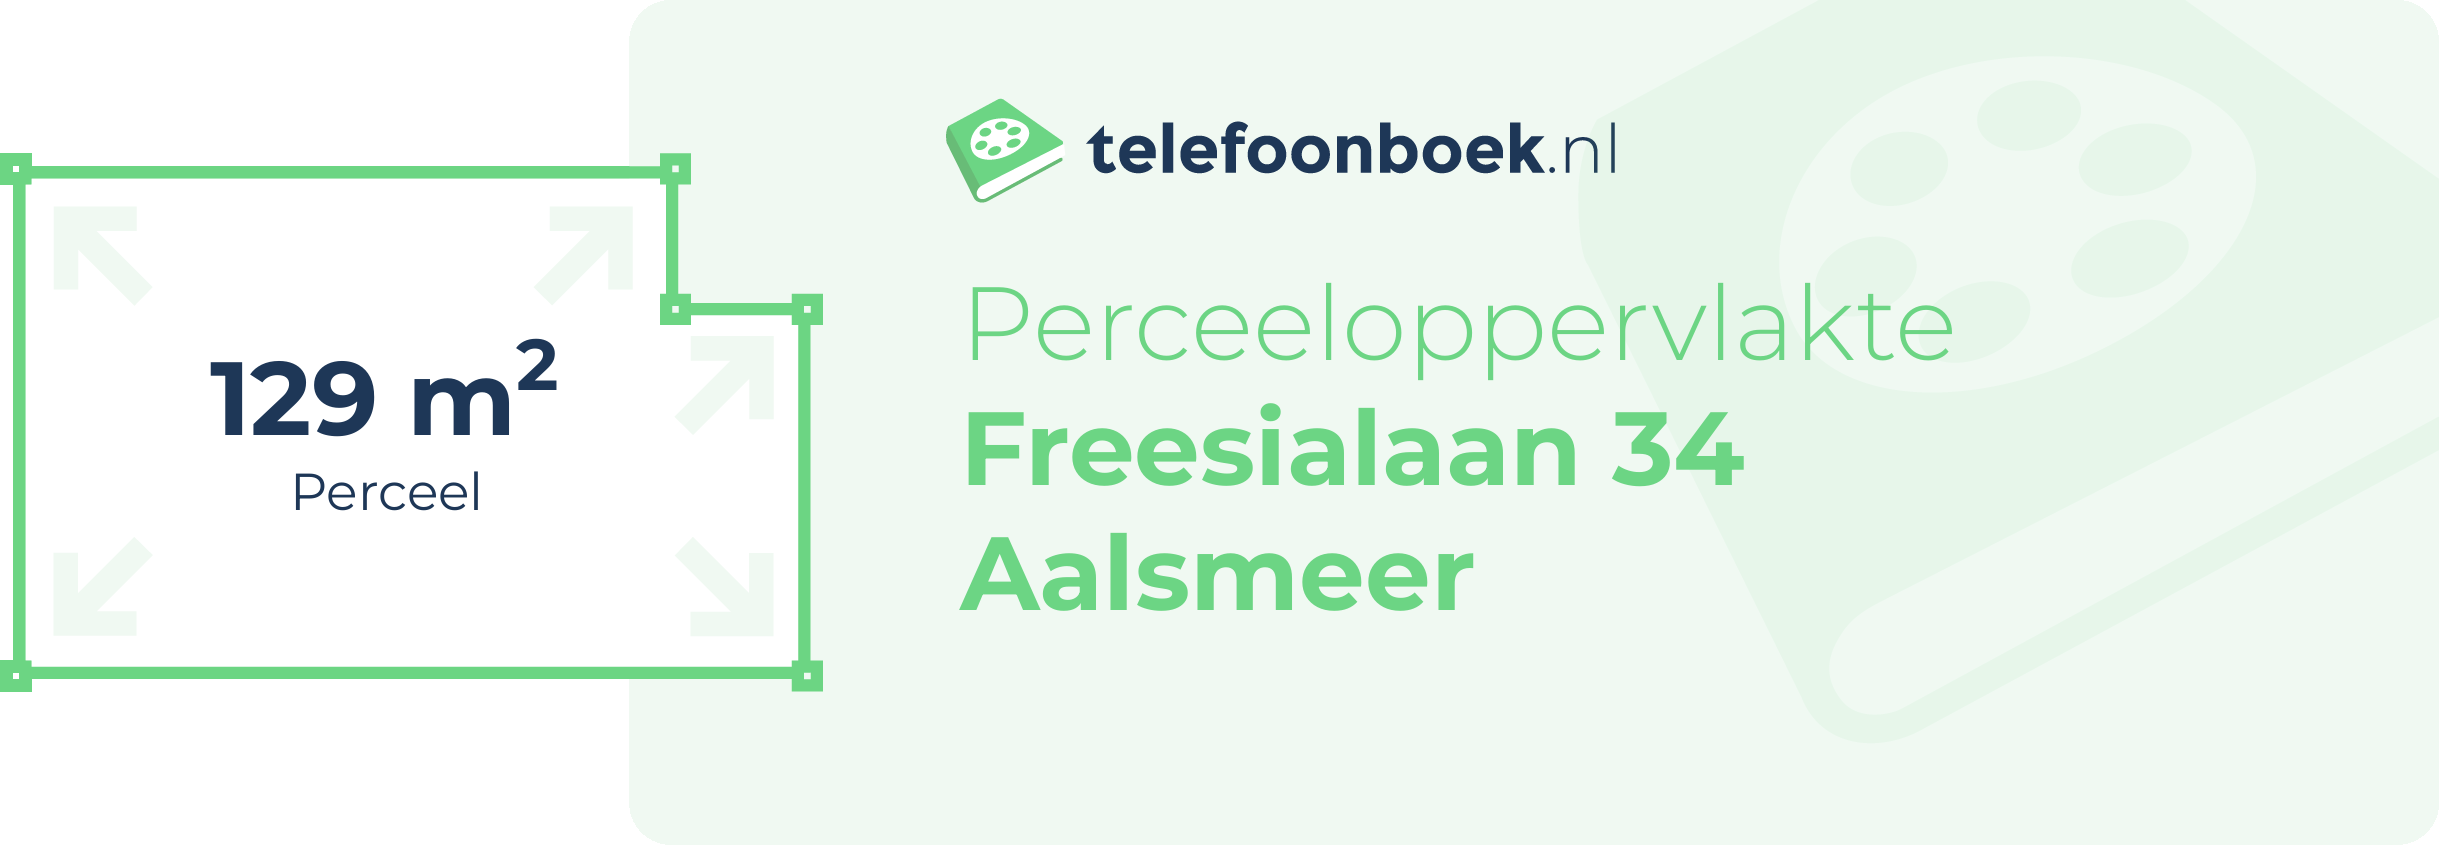 Perceeloppervlakte Freesialaan 34 Aalsmeer